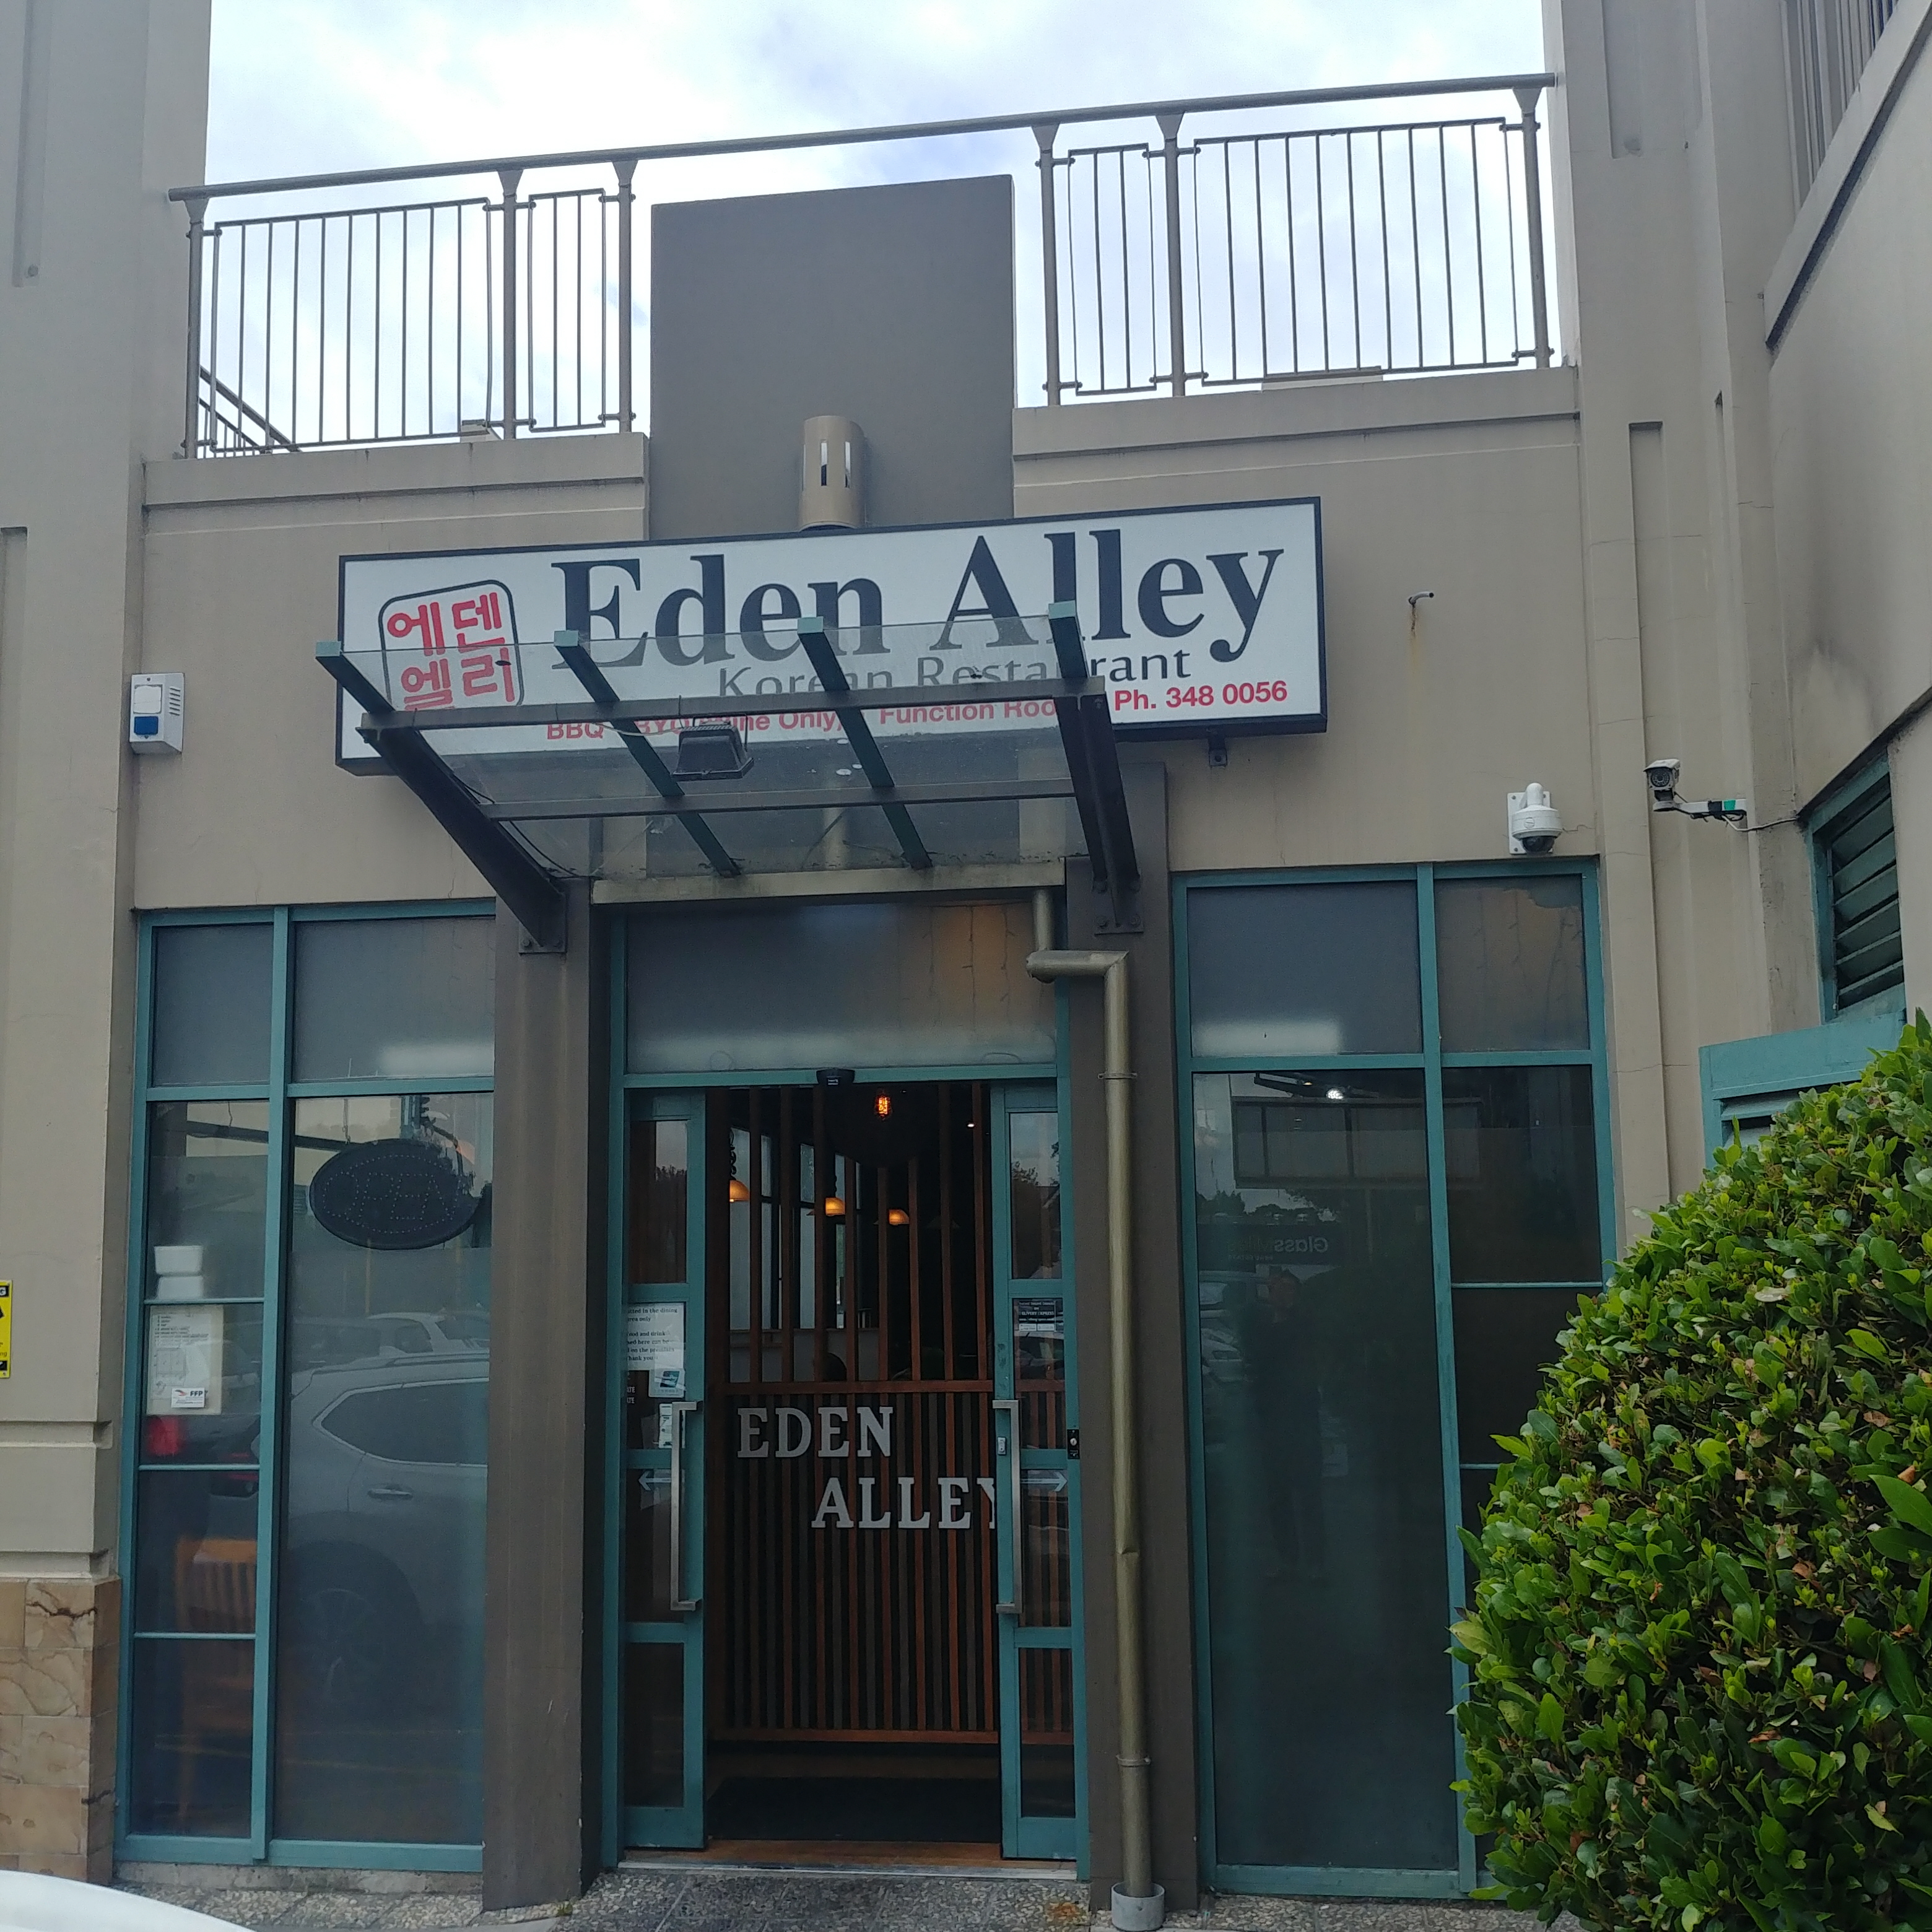 에렌 엘리 Eden Alley Korean Restaurant and Karaoke